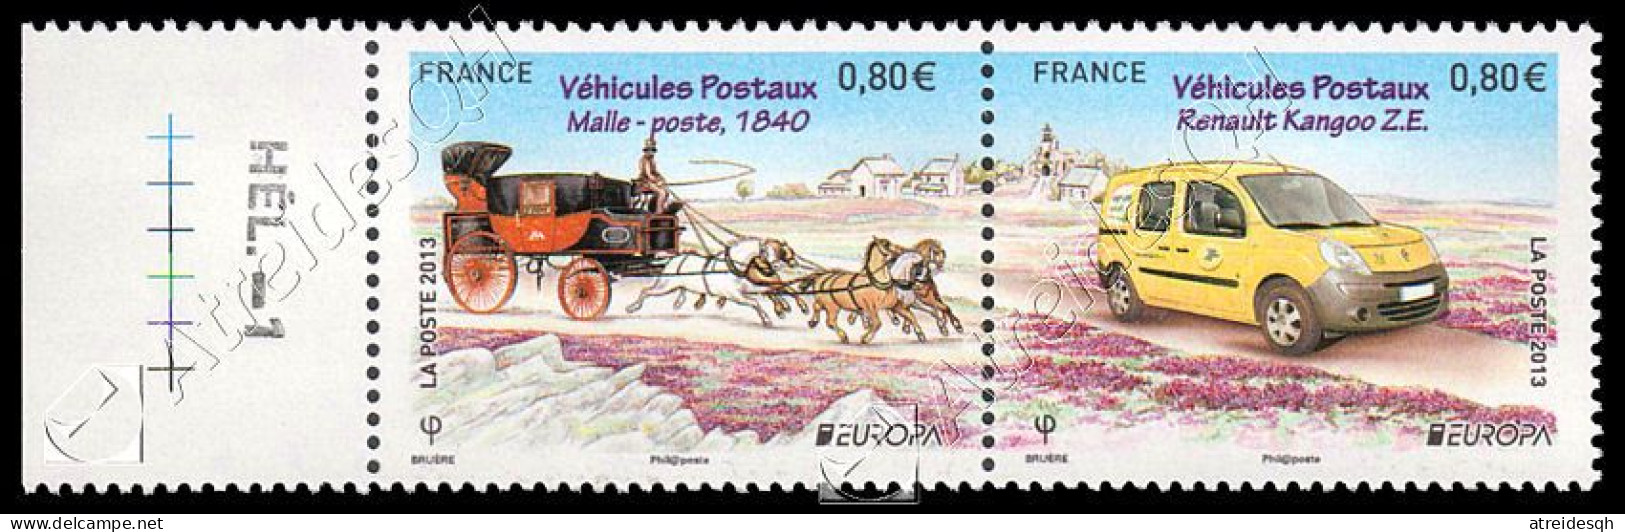 [Q] Francia / France 2013: Europa - Veicoli Postali / Postal Vehicles ** - 2013